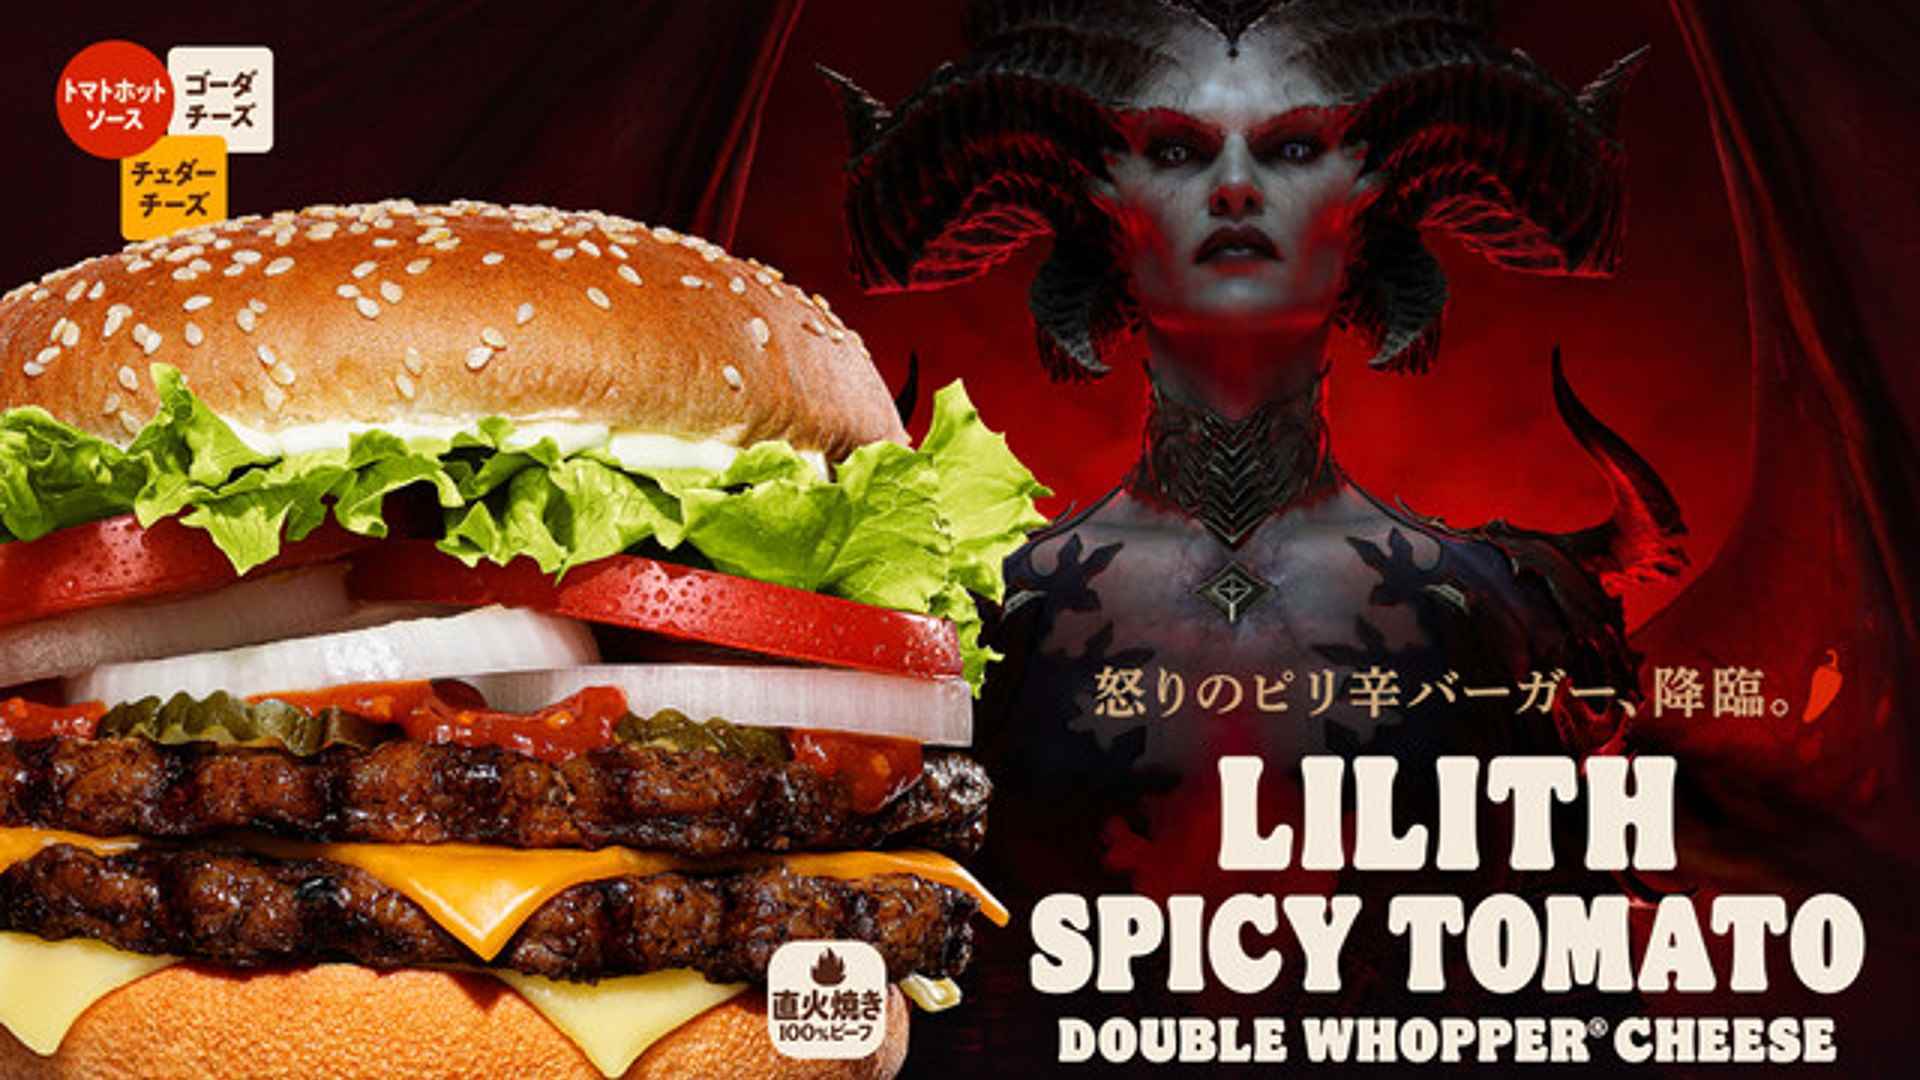 Lilith Baharatlı Domates Burger, yeni Diablo 4 temalı reklam kampanyasının bir parçası